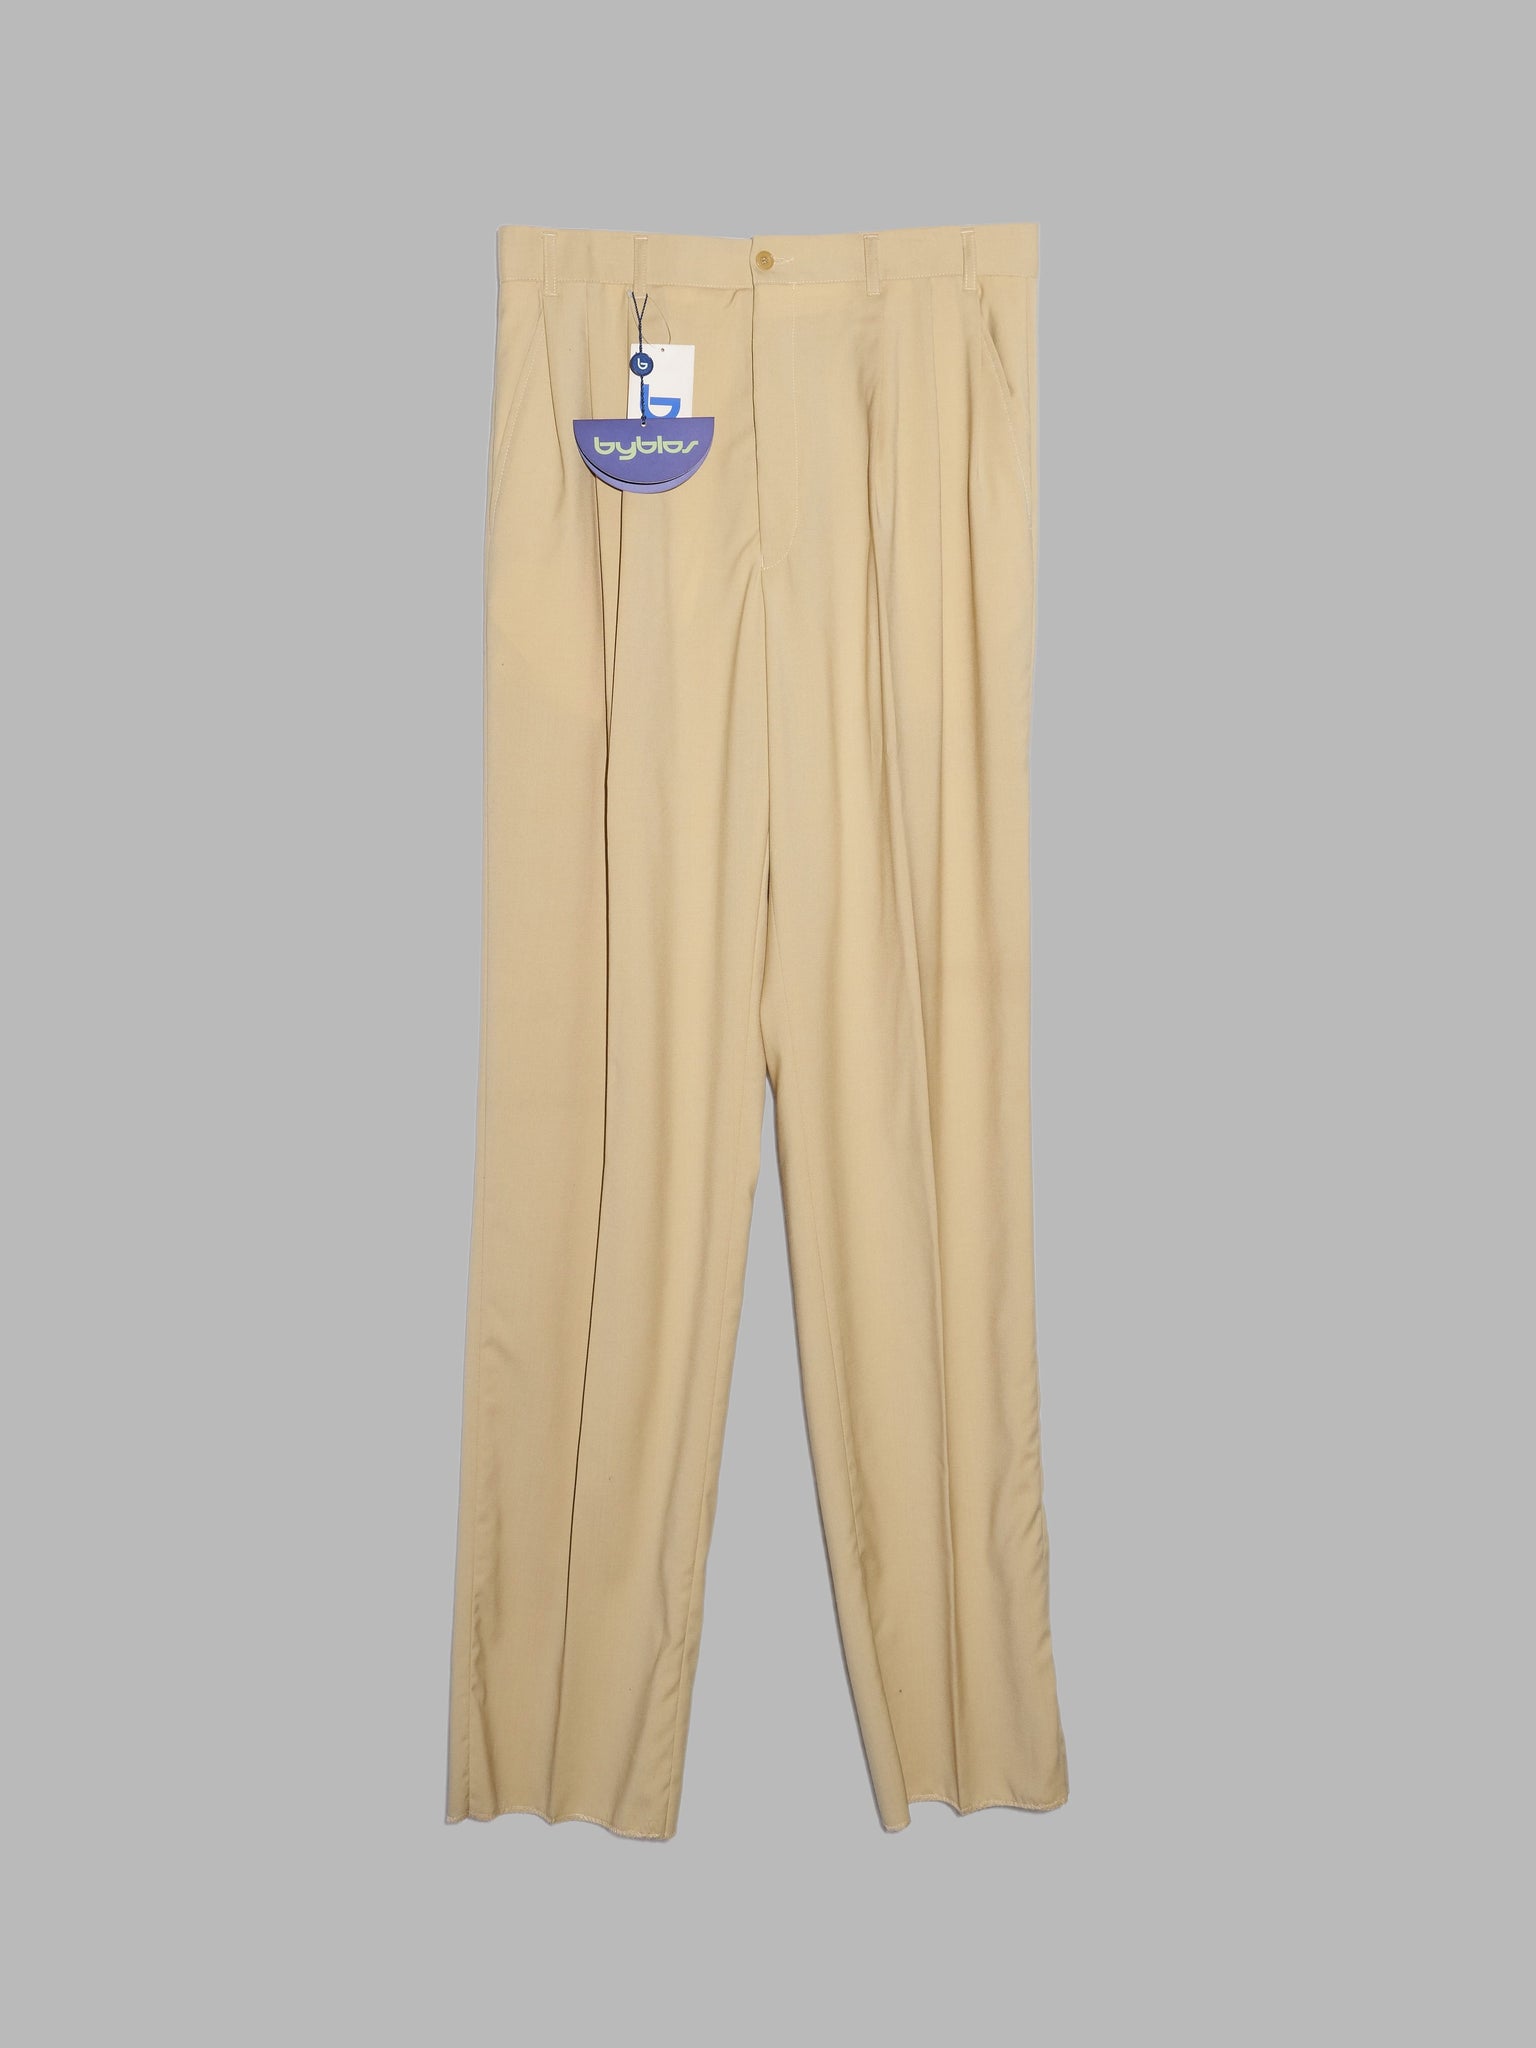 Byblos 1990s beige wool pleated trousers - size 50 new deadstock unhemmed